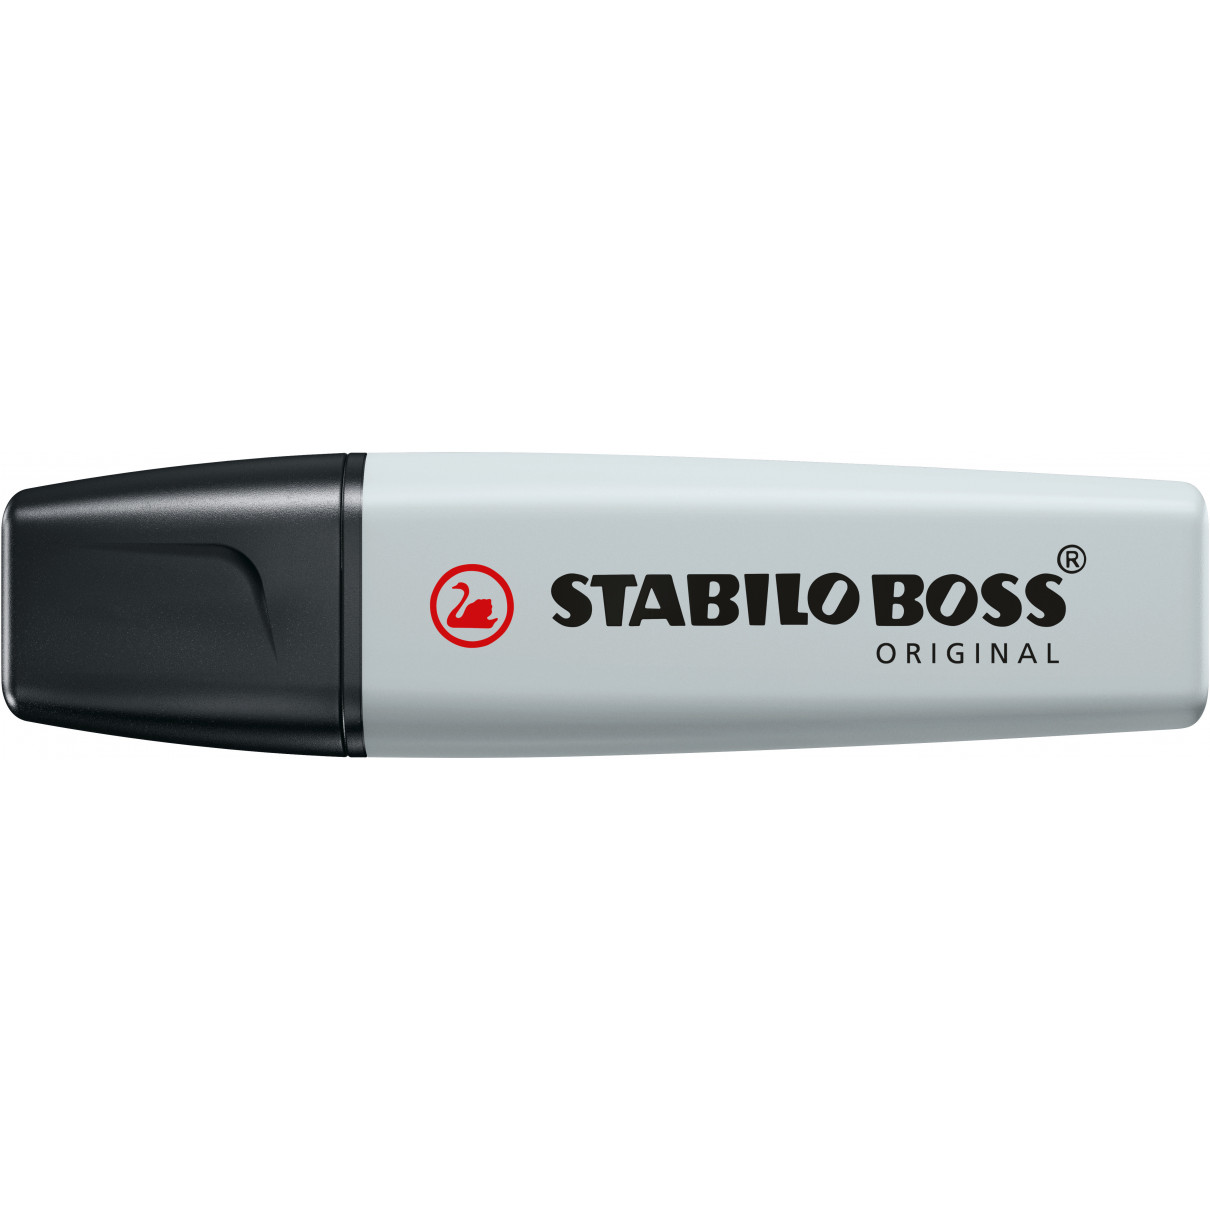 Stabilo Boss Original Pastel Highlighter Display